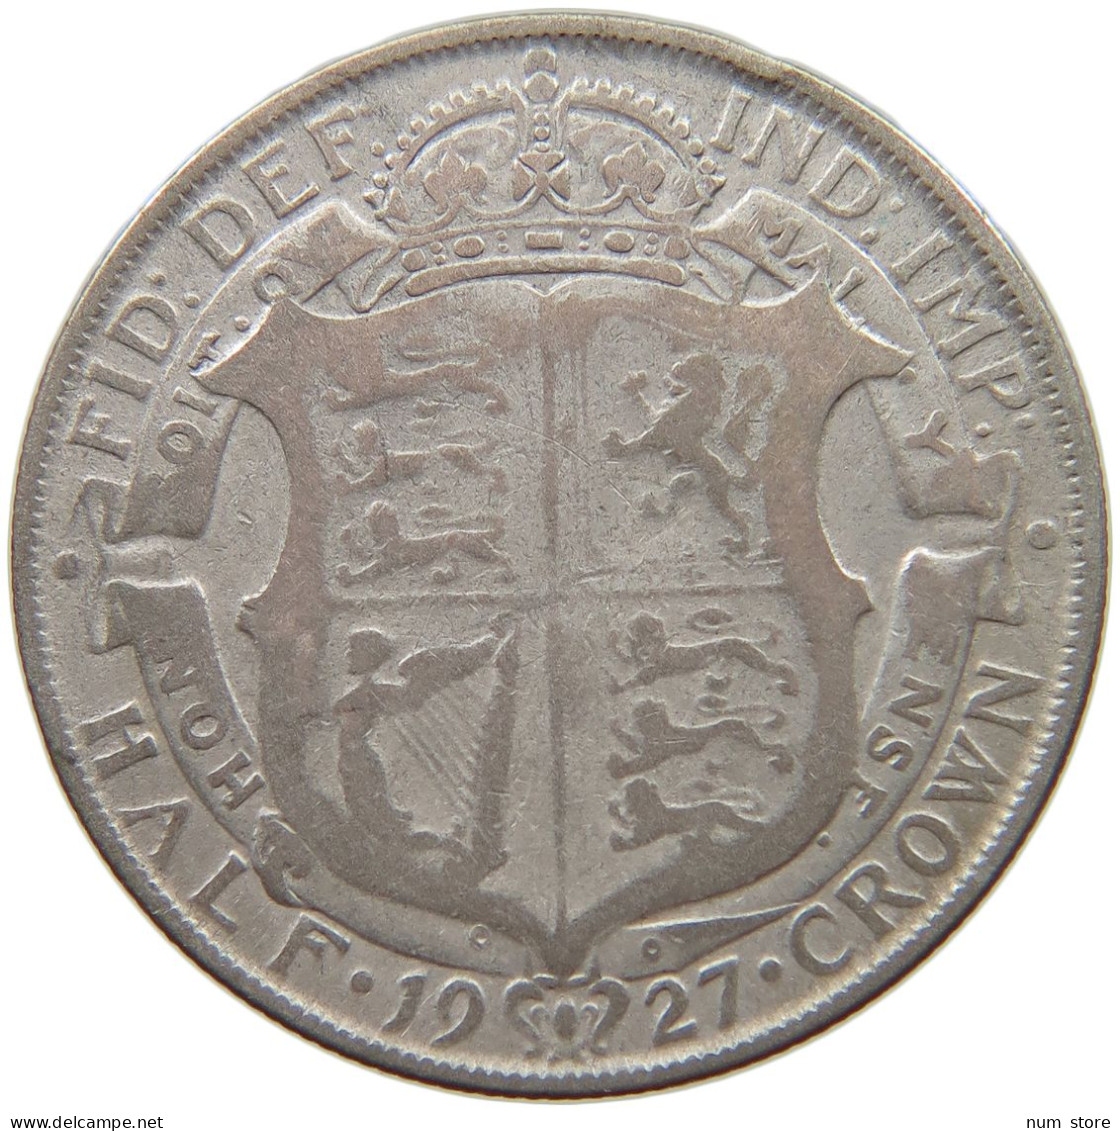 GREAT BRITAIN HALF CROWN 1923 George V. (1910-1936) #c049 0327 - K. 1/2 Crown